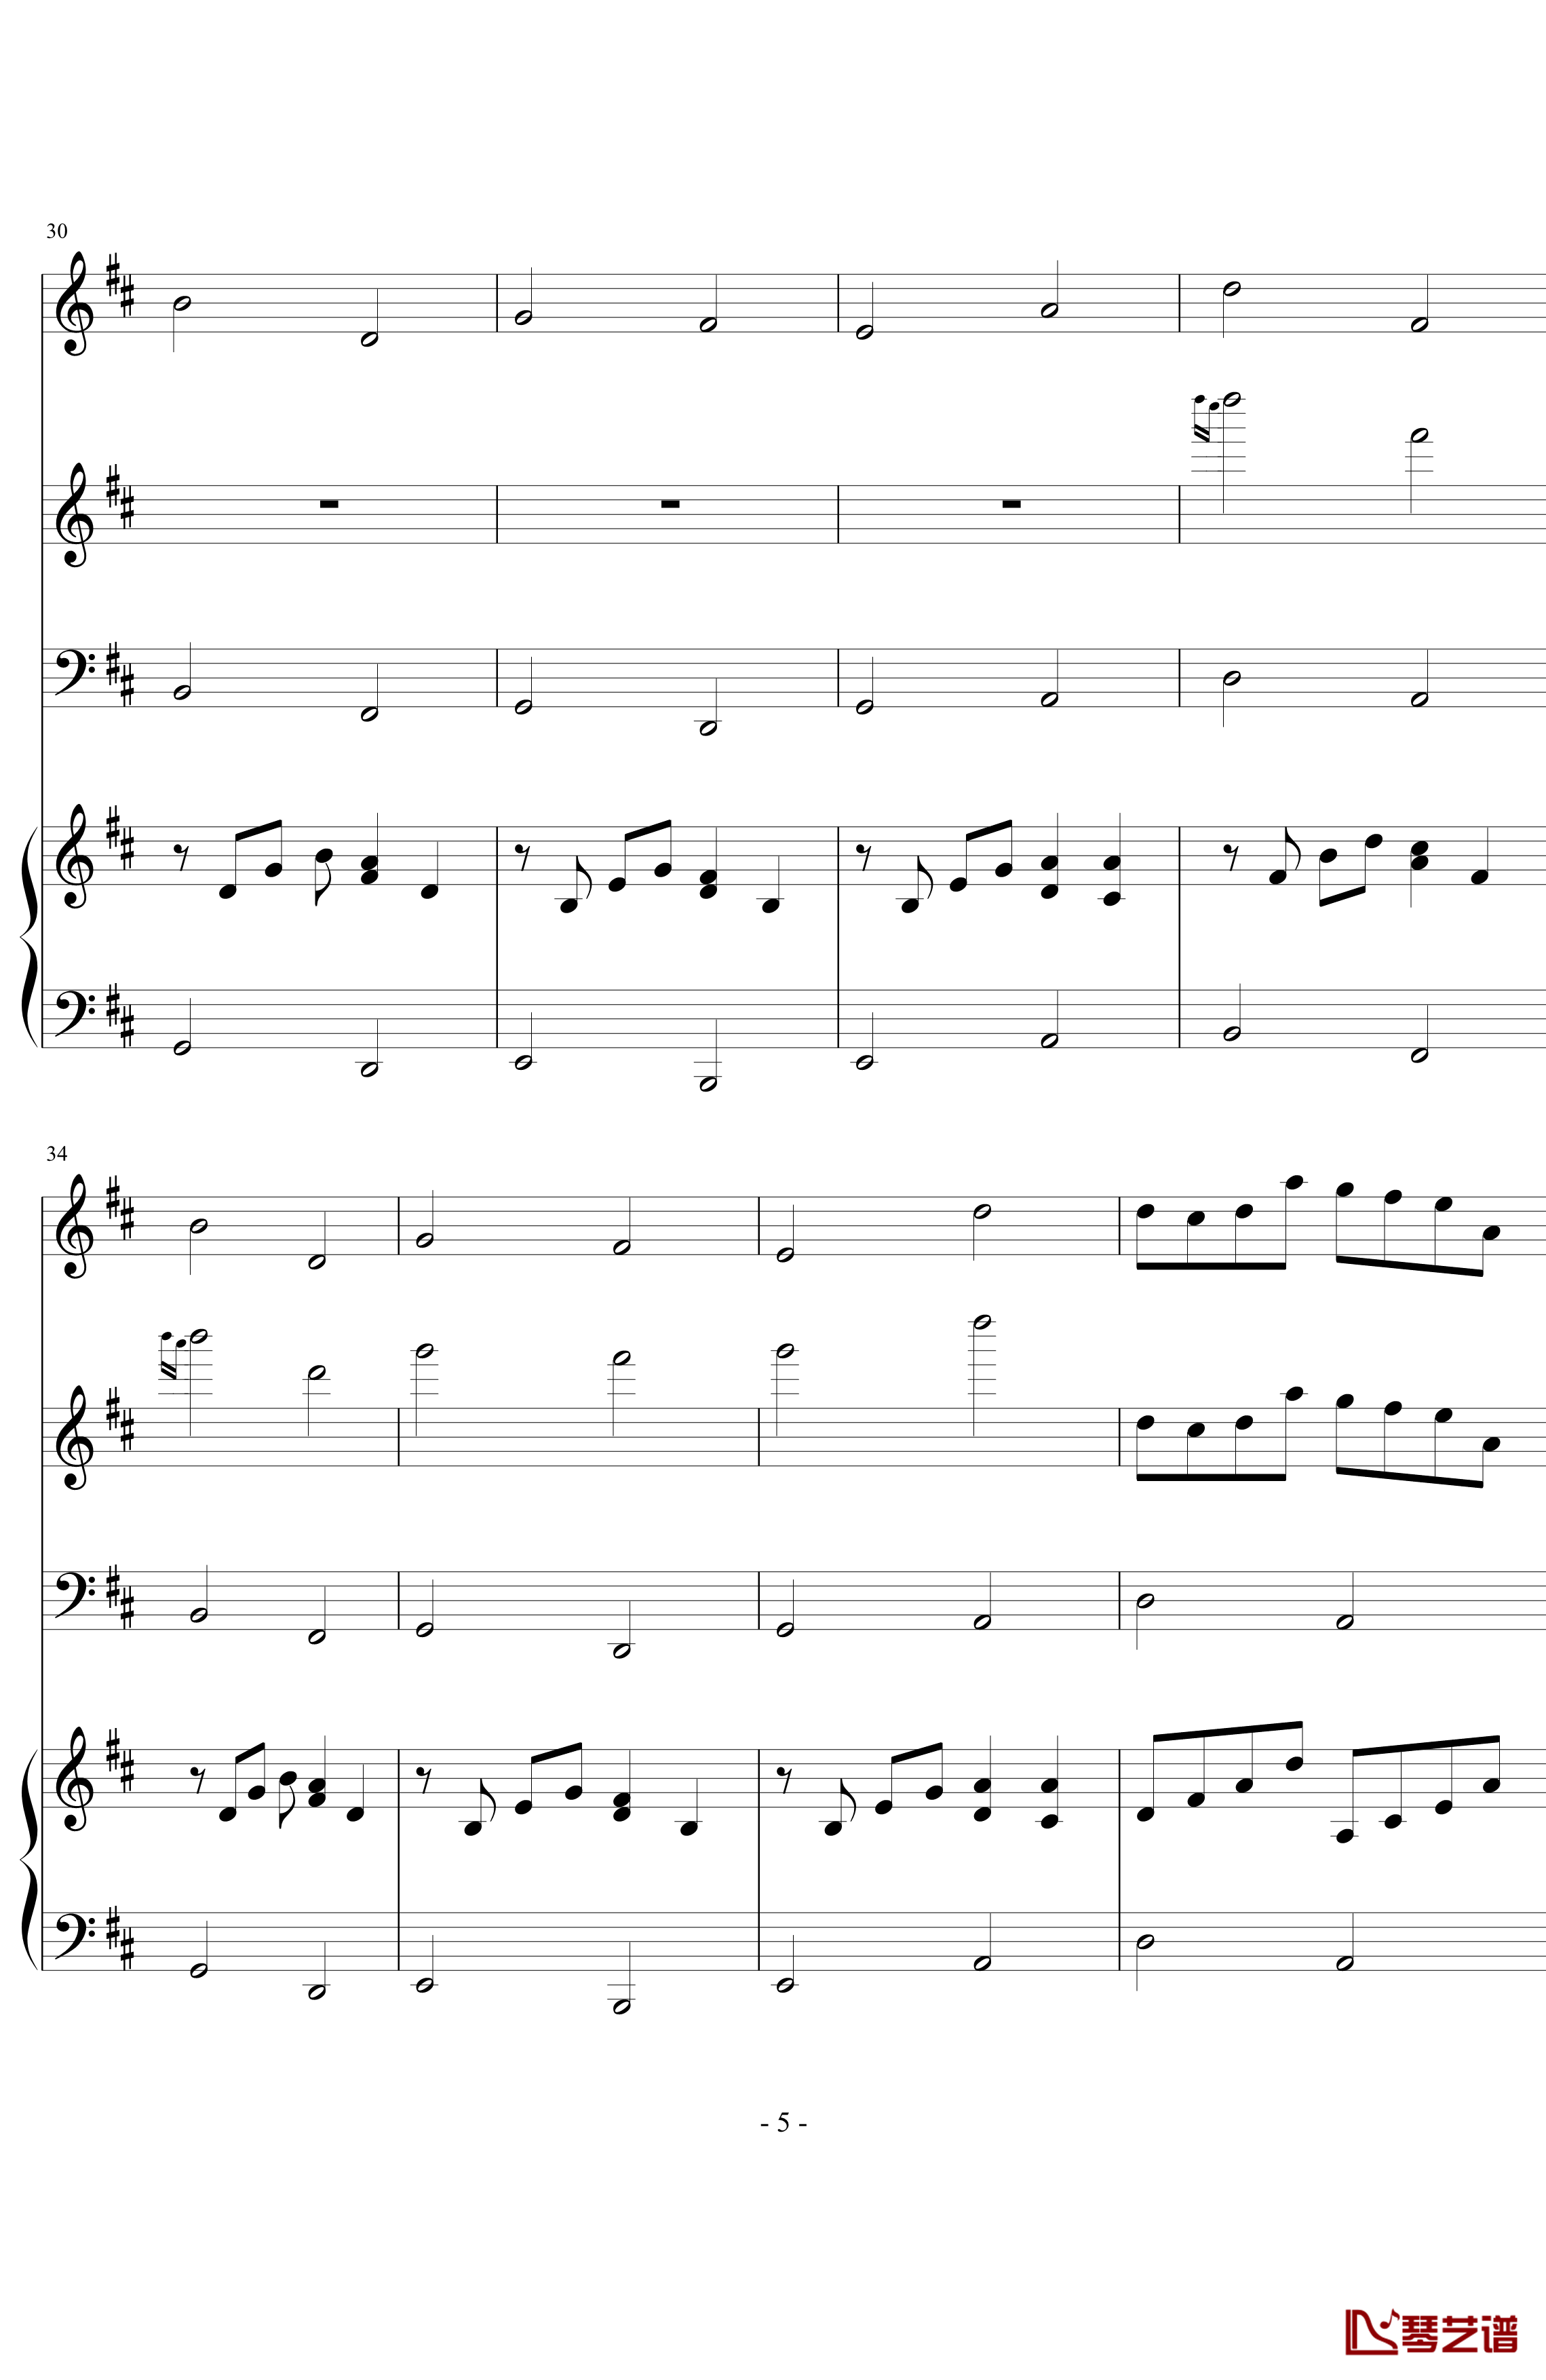 卡农森林版钢琴谱-帕赫贝尔-Pachelbel5